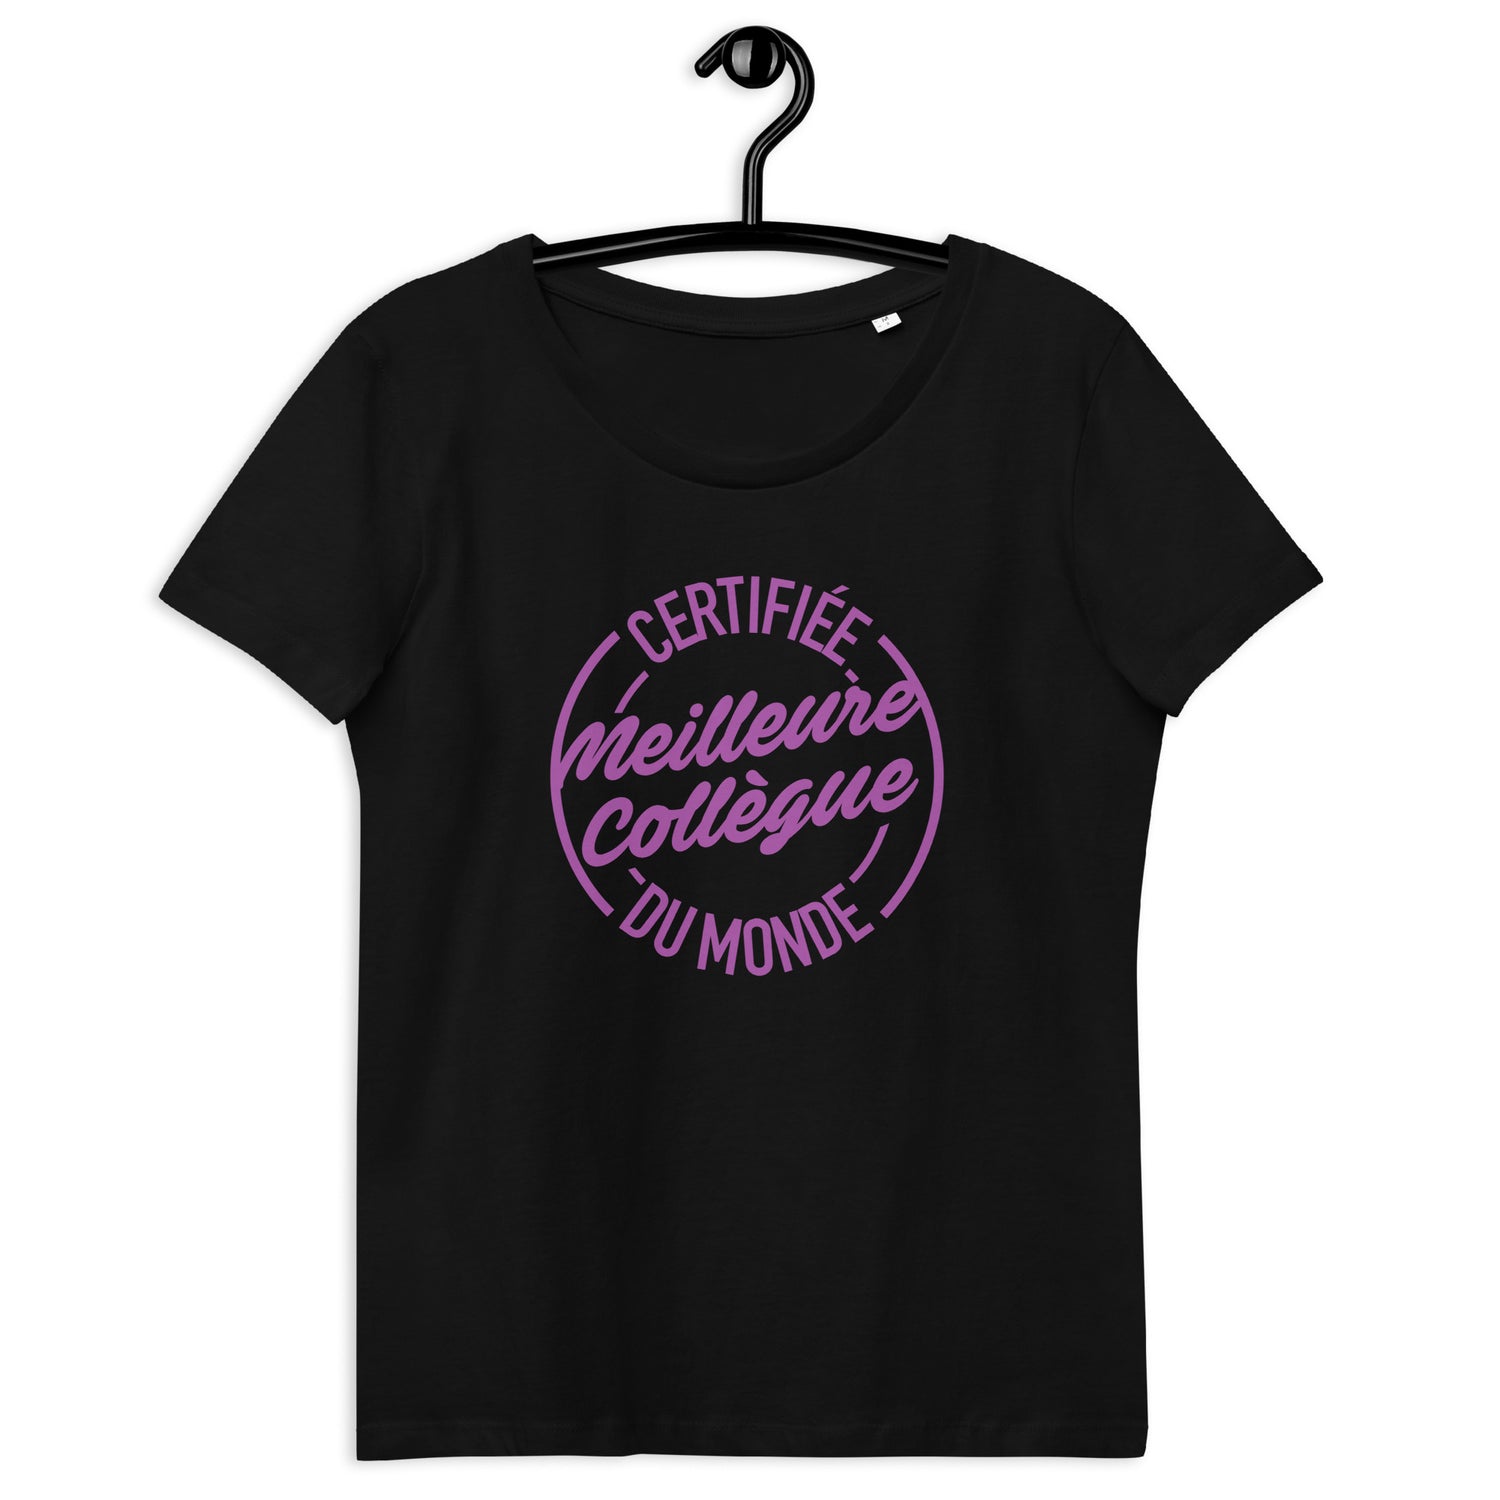 Certifiée meilleure collègue - T-shirt moulant écologique femme